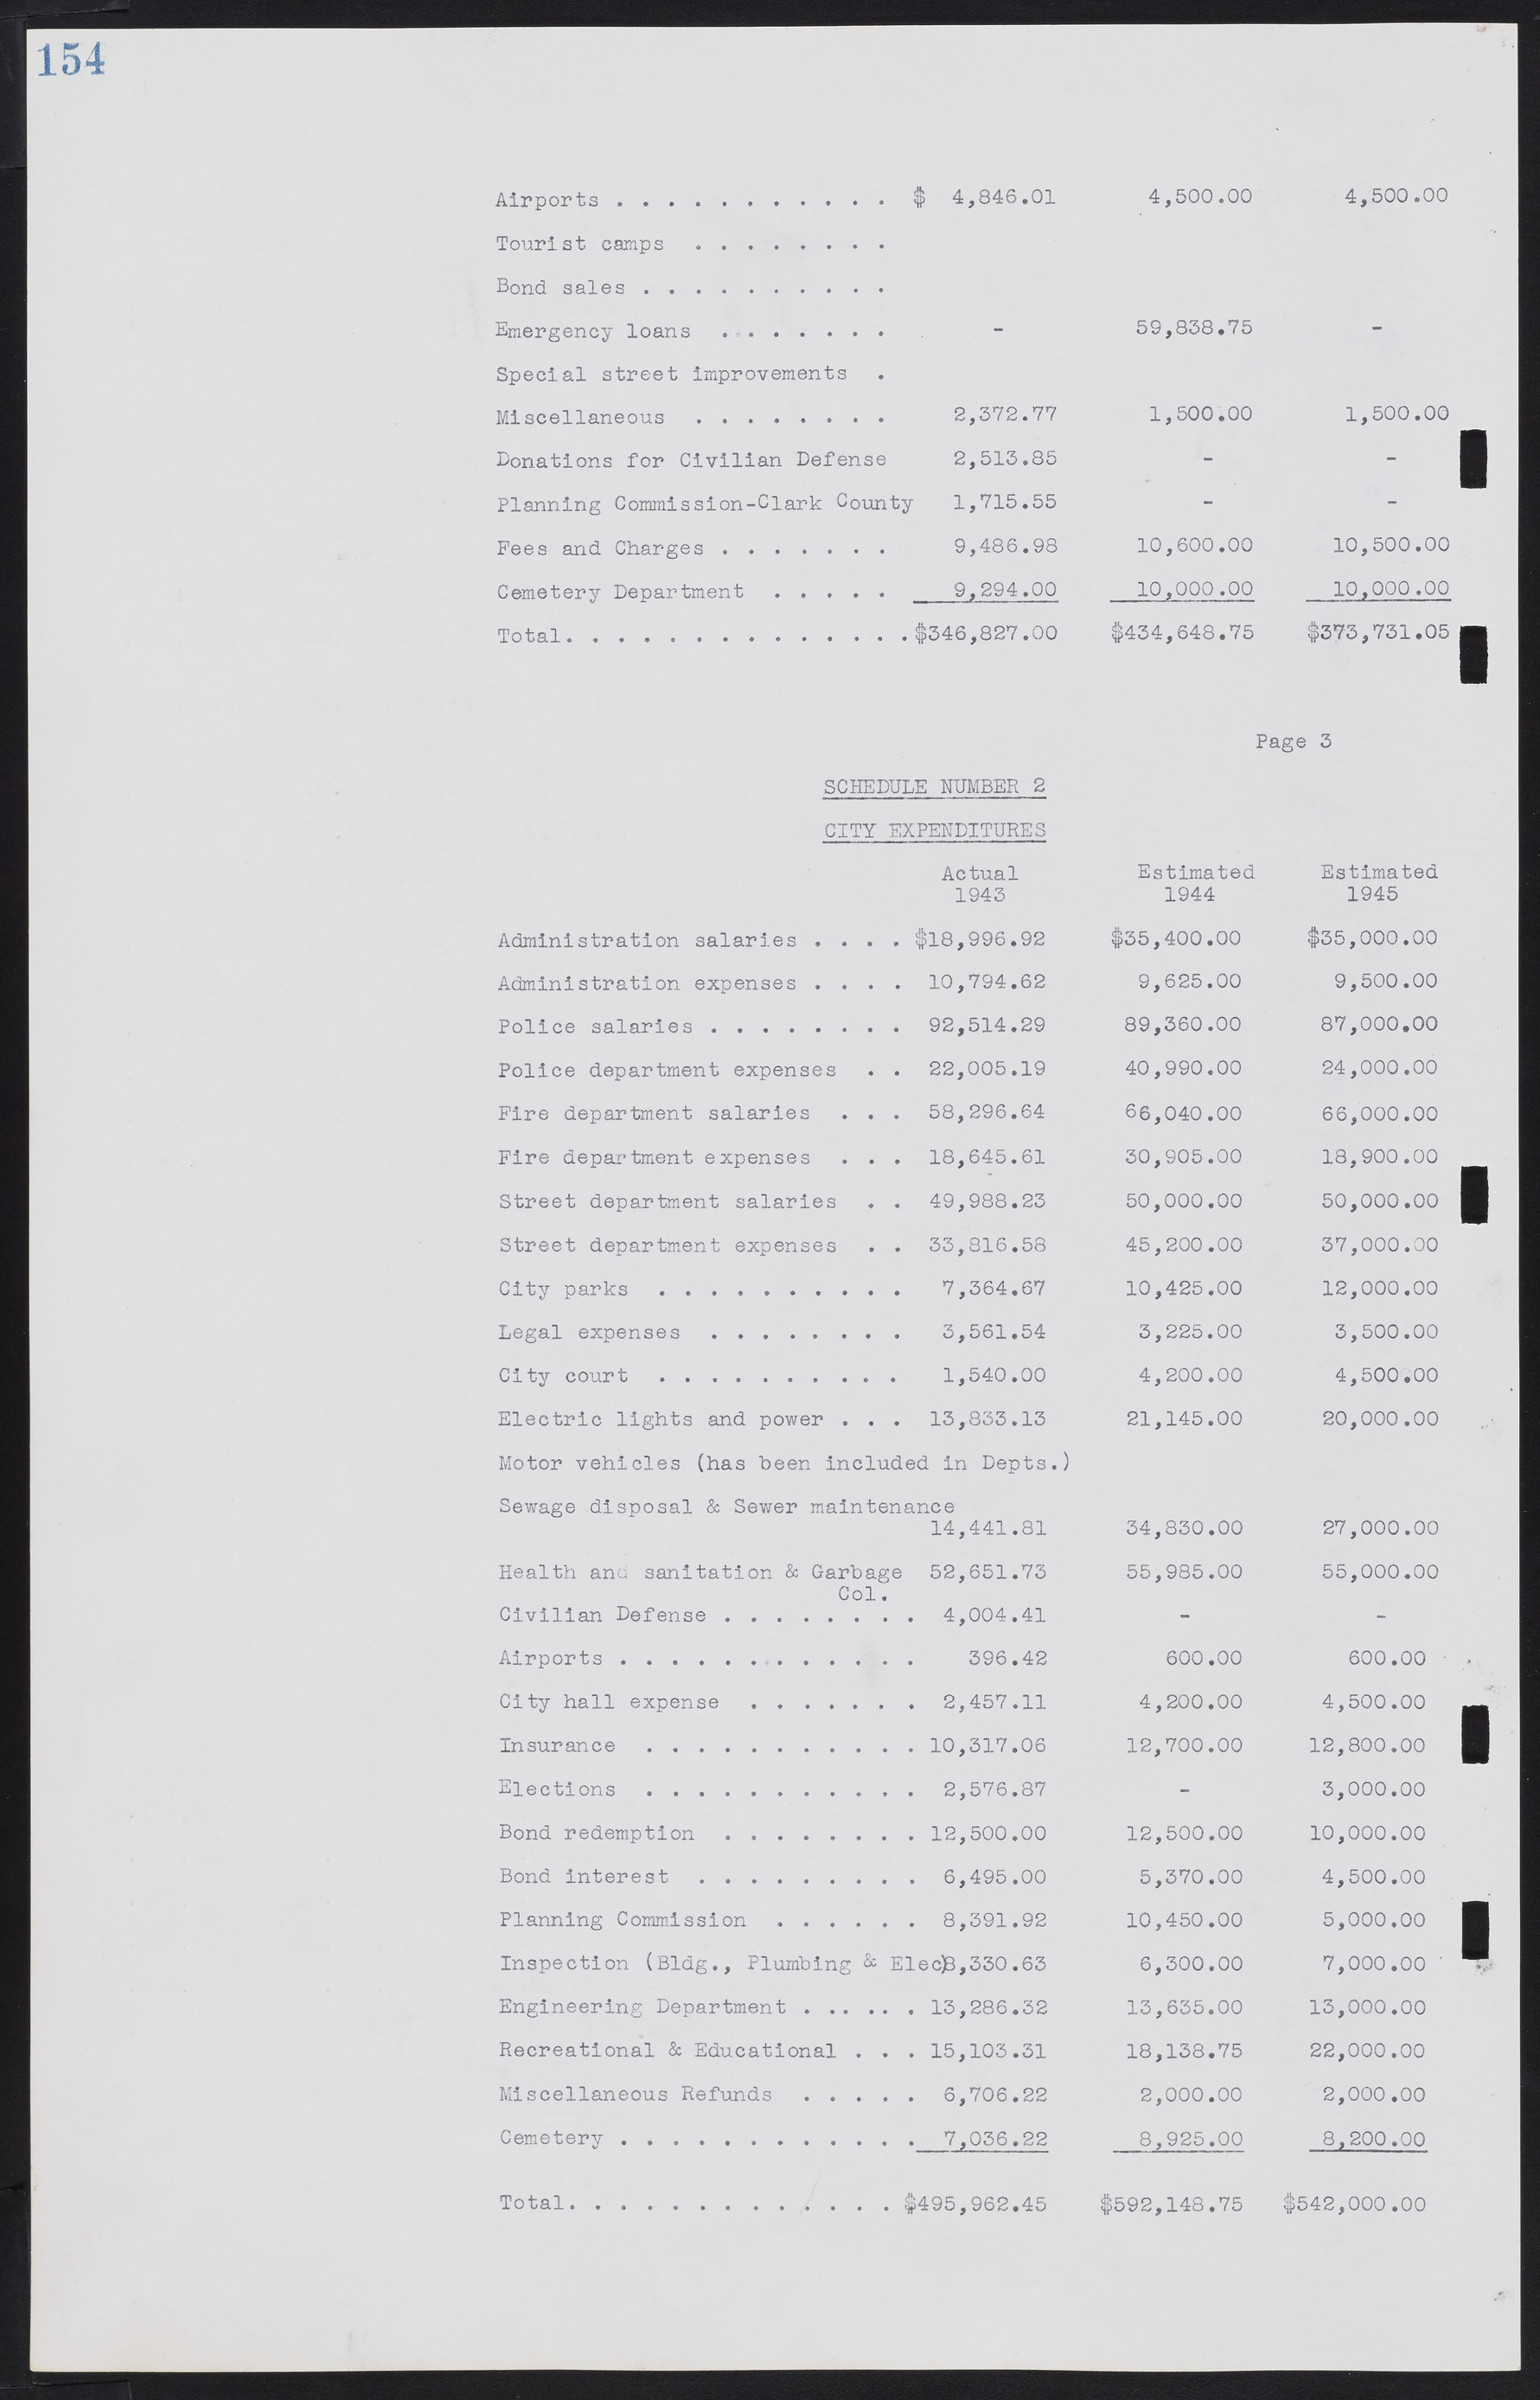 Las Vegas City Commission Minutes, August 11, 1942 to December 30, 1946, lvc000005-171